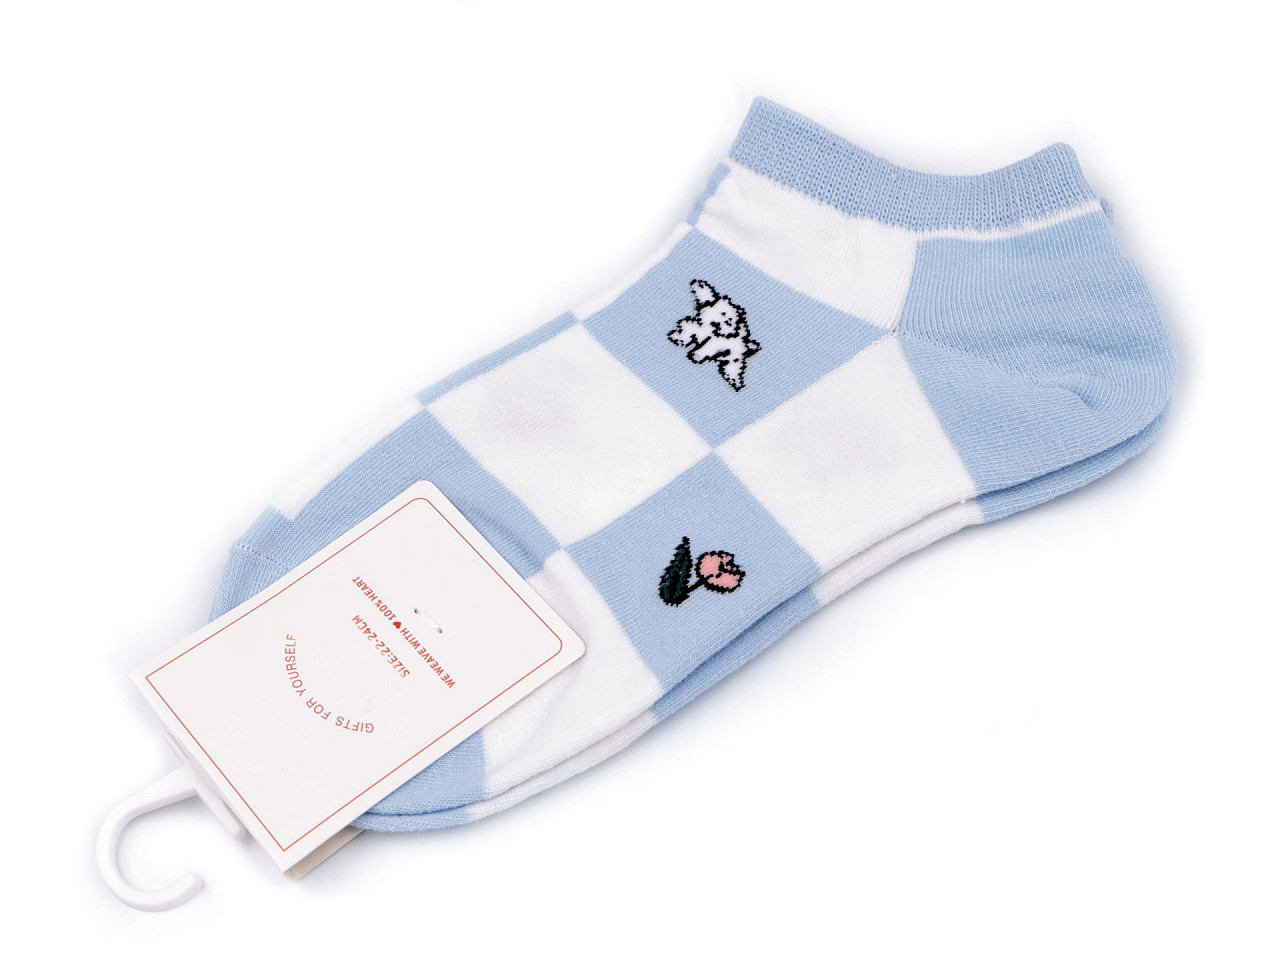 Dámské / dívčí bavlněné ponožky kotníkové, barva 6 modrá světlá kostky